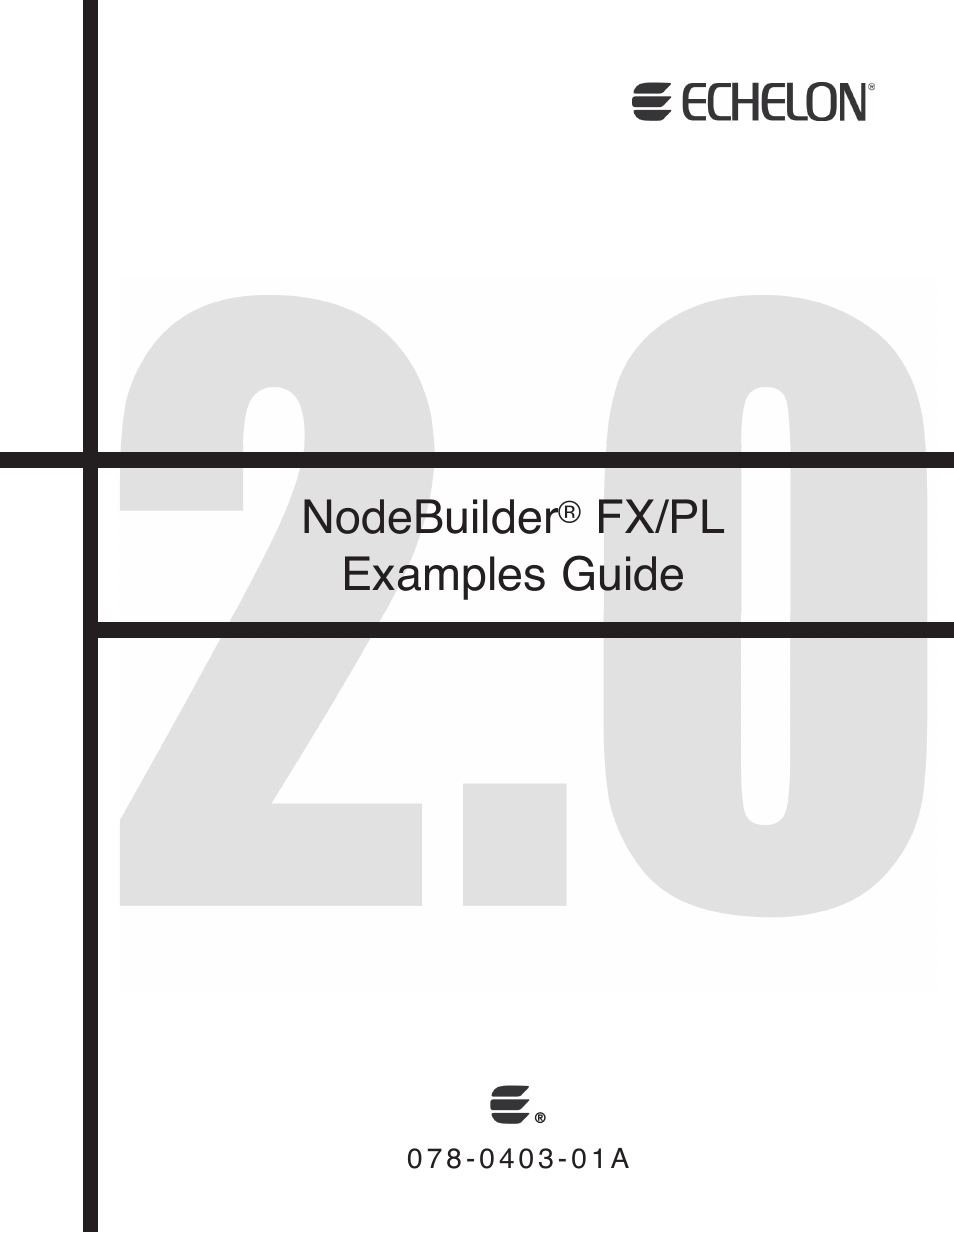 NodeBuilder FX/PL Examples